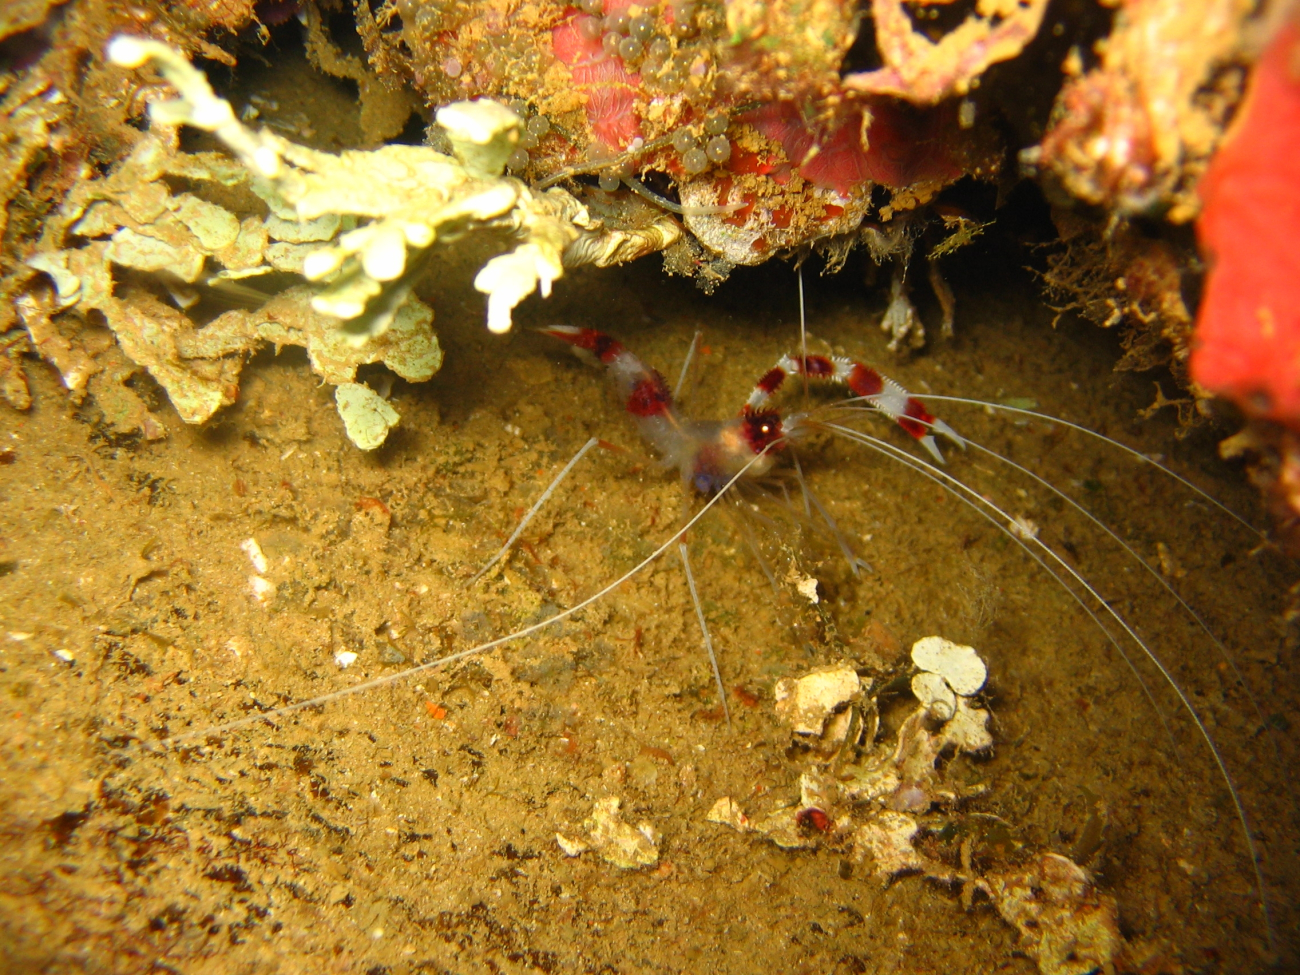 Cleaner shrimp (Stenopus hispidus)